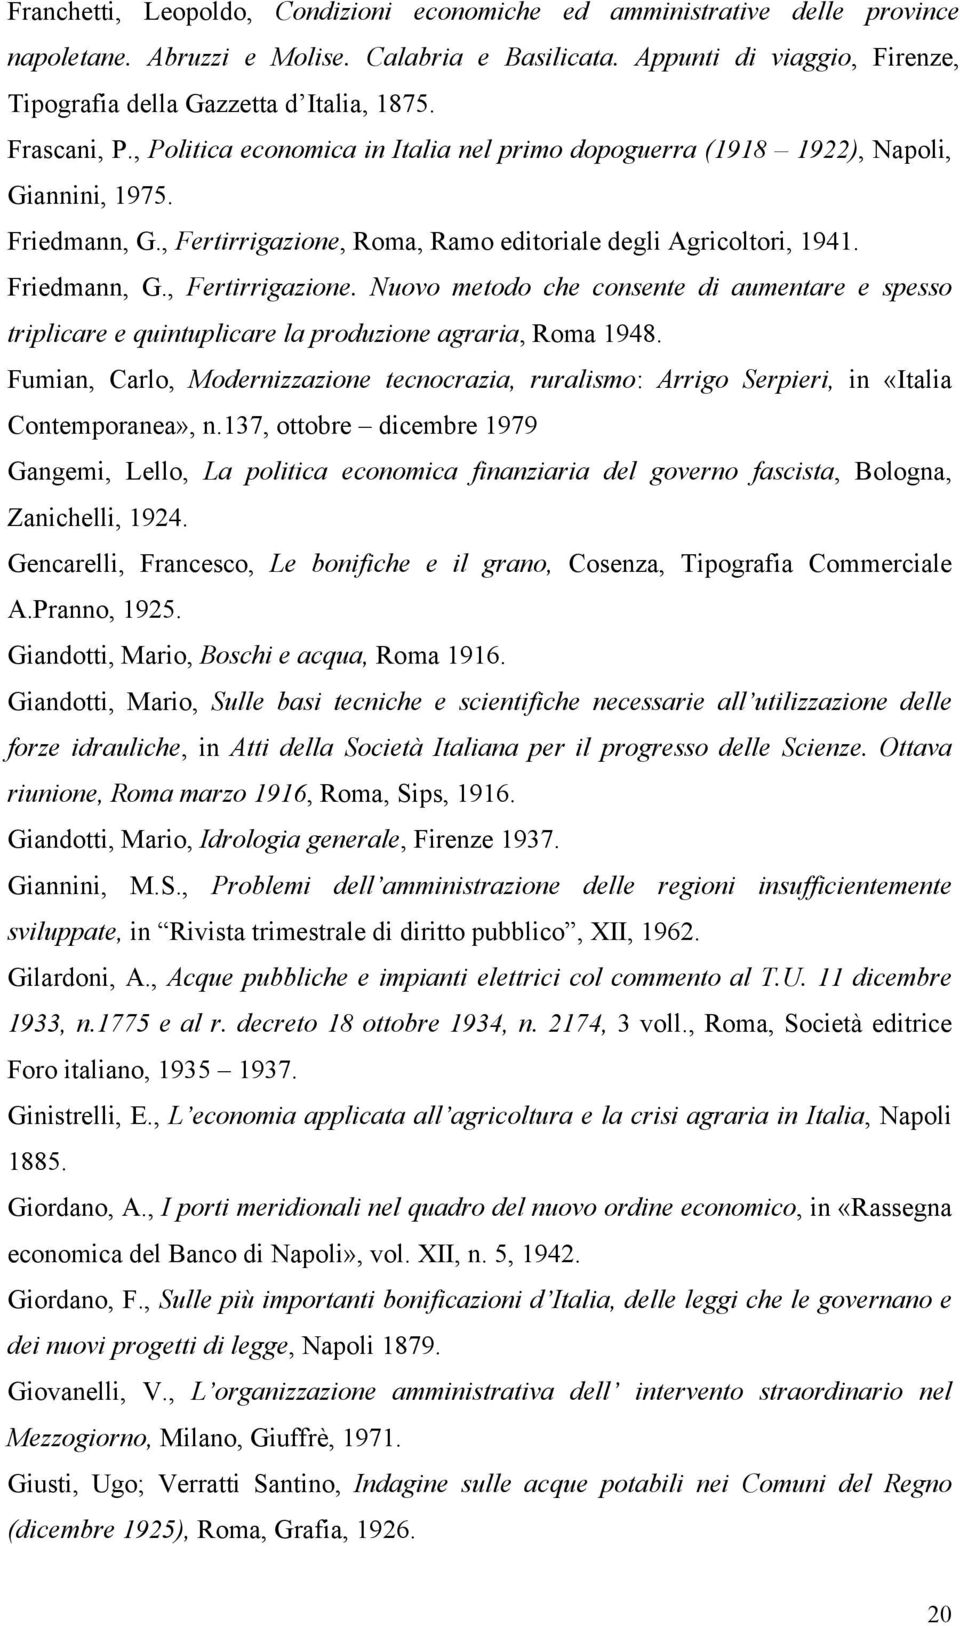 Roma, Ramo editoriale degli Agricoltori, 1941. Friedmann, G., Fertirrigazione. Nuovo metodo che consente di aumentare e spesso triplicare e quintuplicare la produzione agraria, Roma 1948.